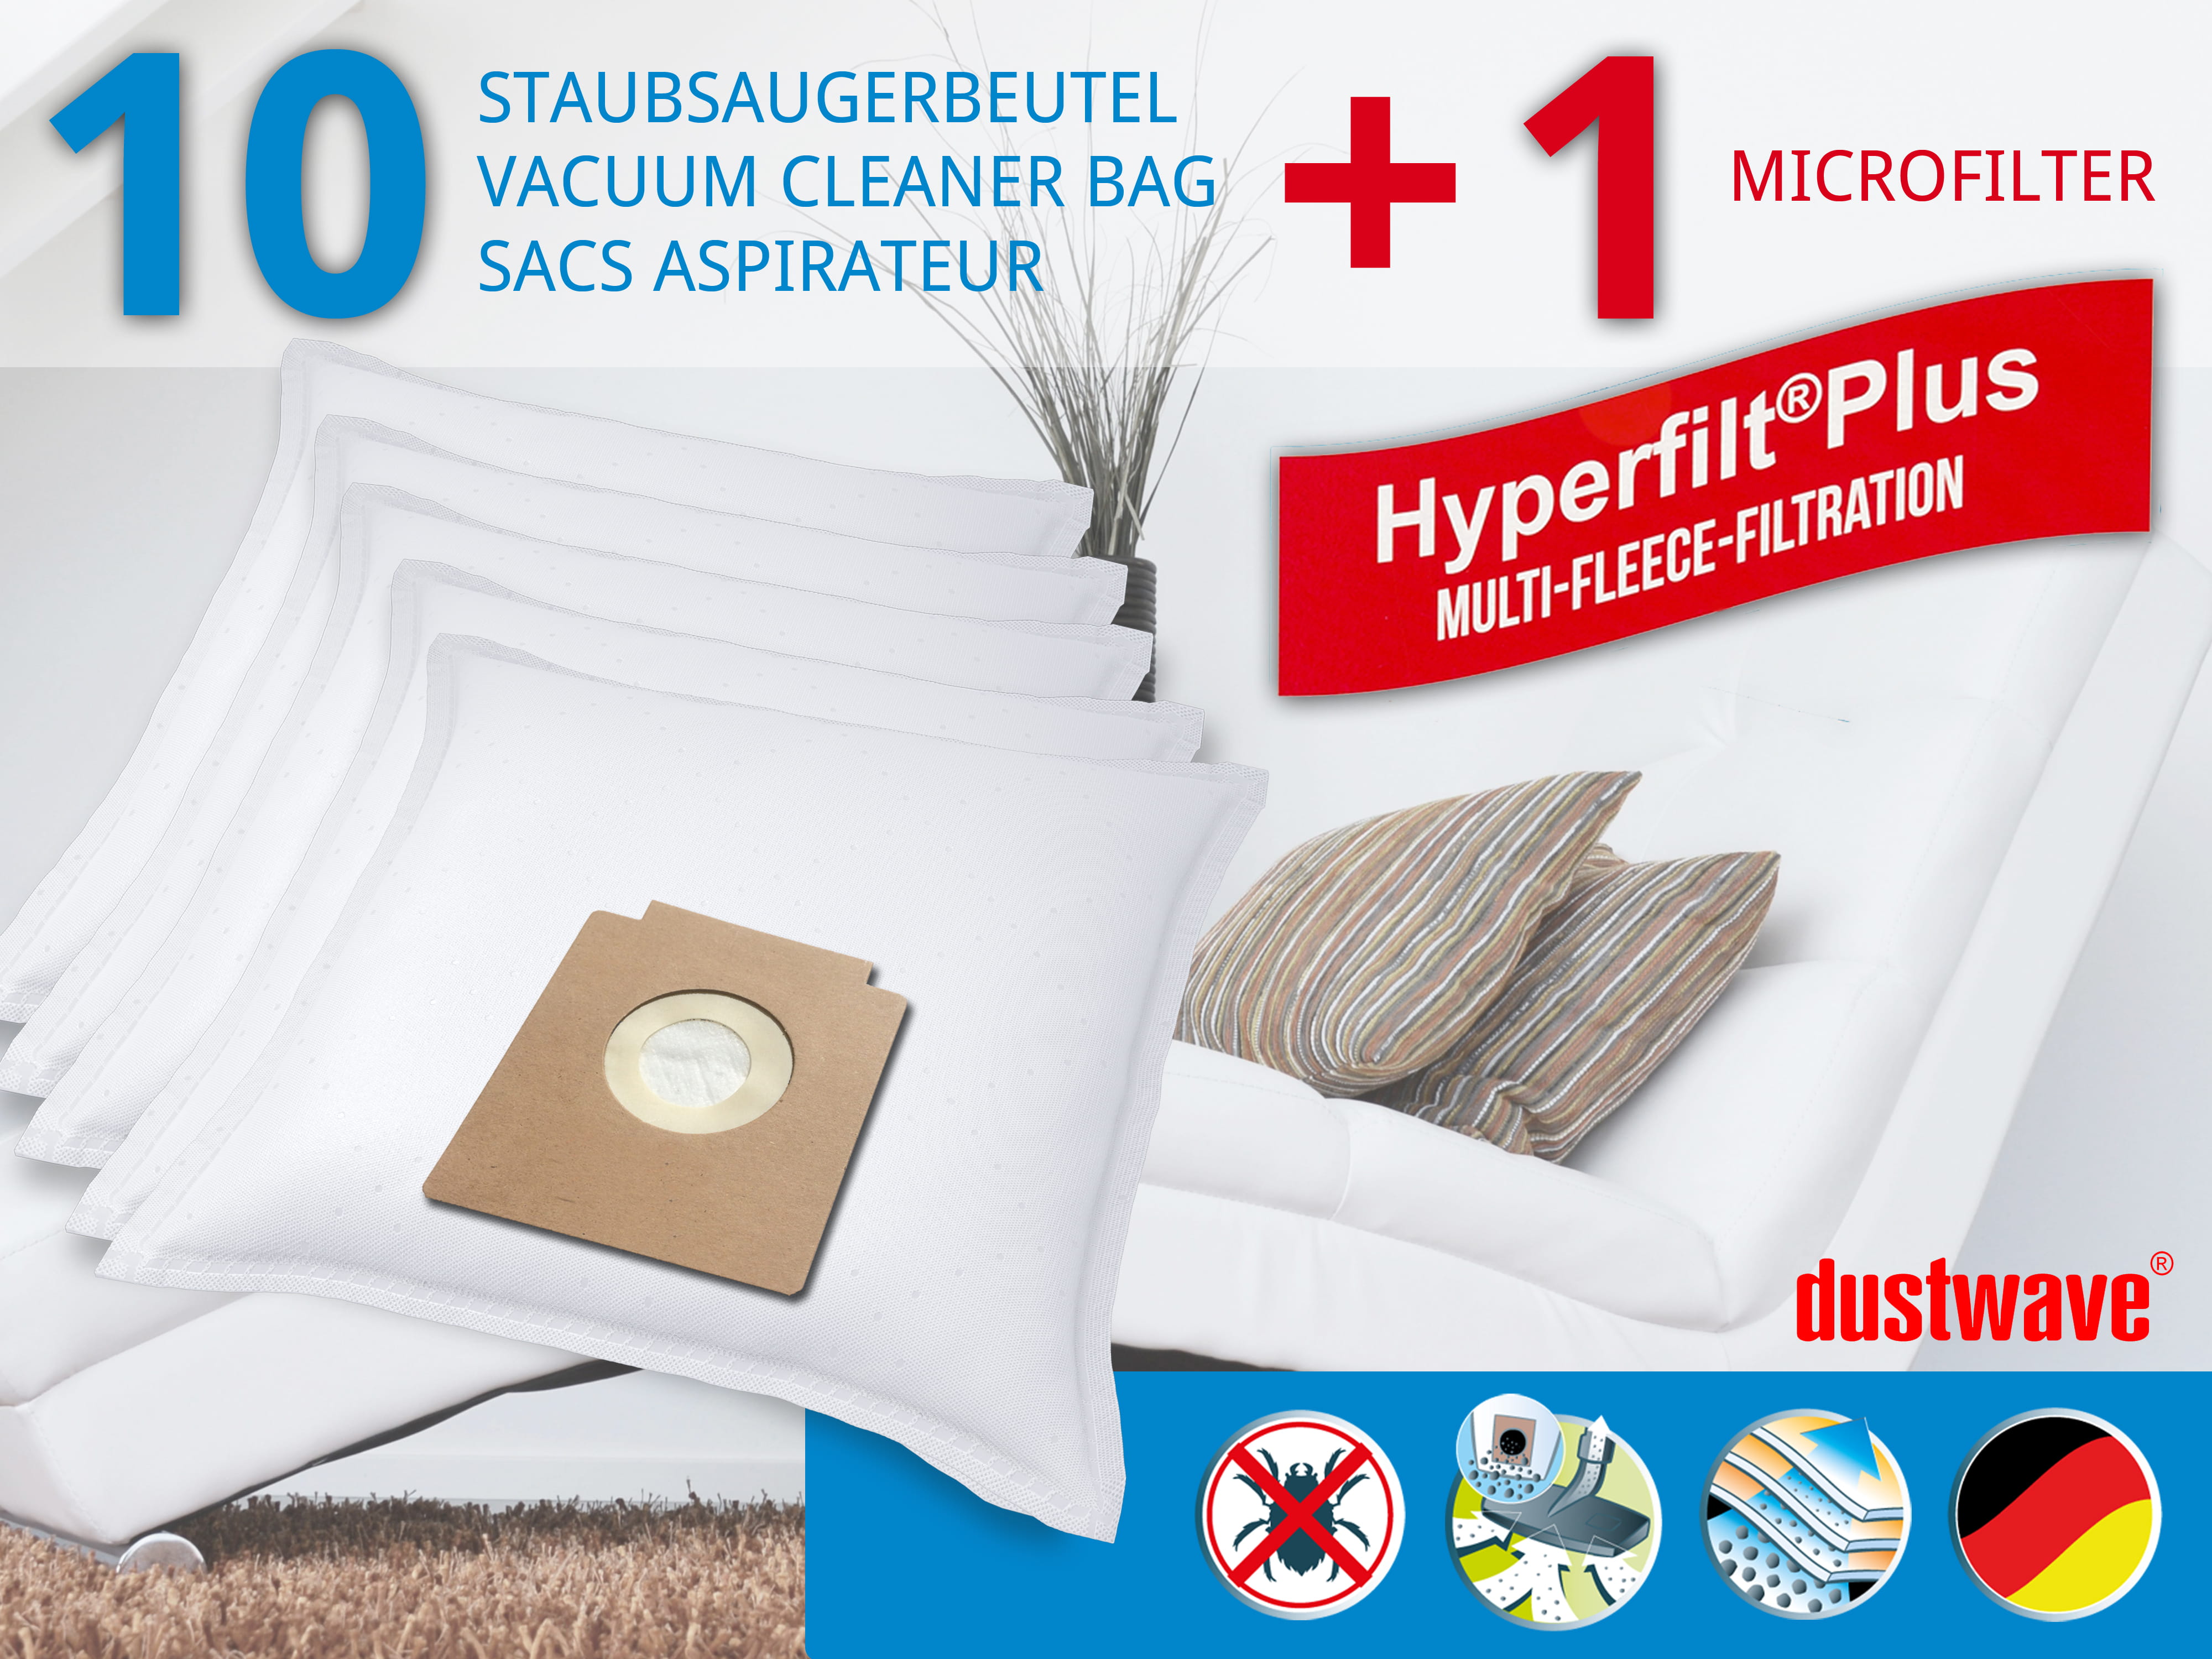 Dustwave® 10 Staubsaugerbeutel für Alaska VC 1400, 1410 - hocheffizient, mehrlagiges Mikrovlies mit Hygieneverschluss - Made in Germany